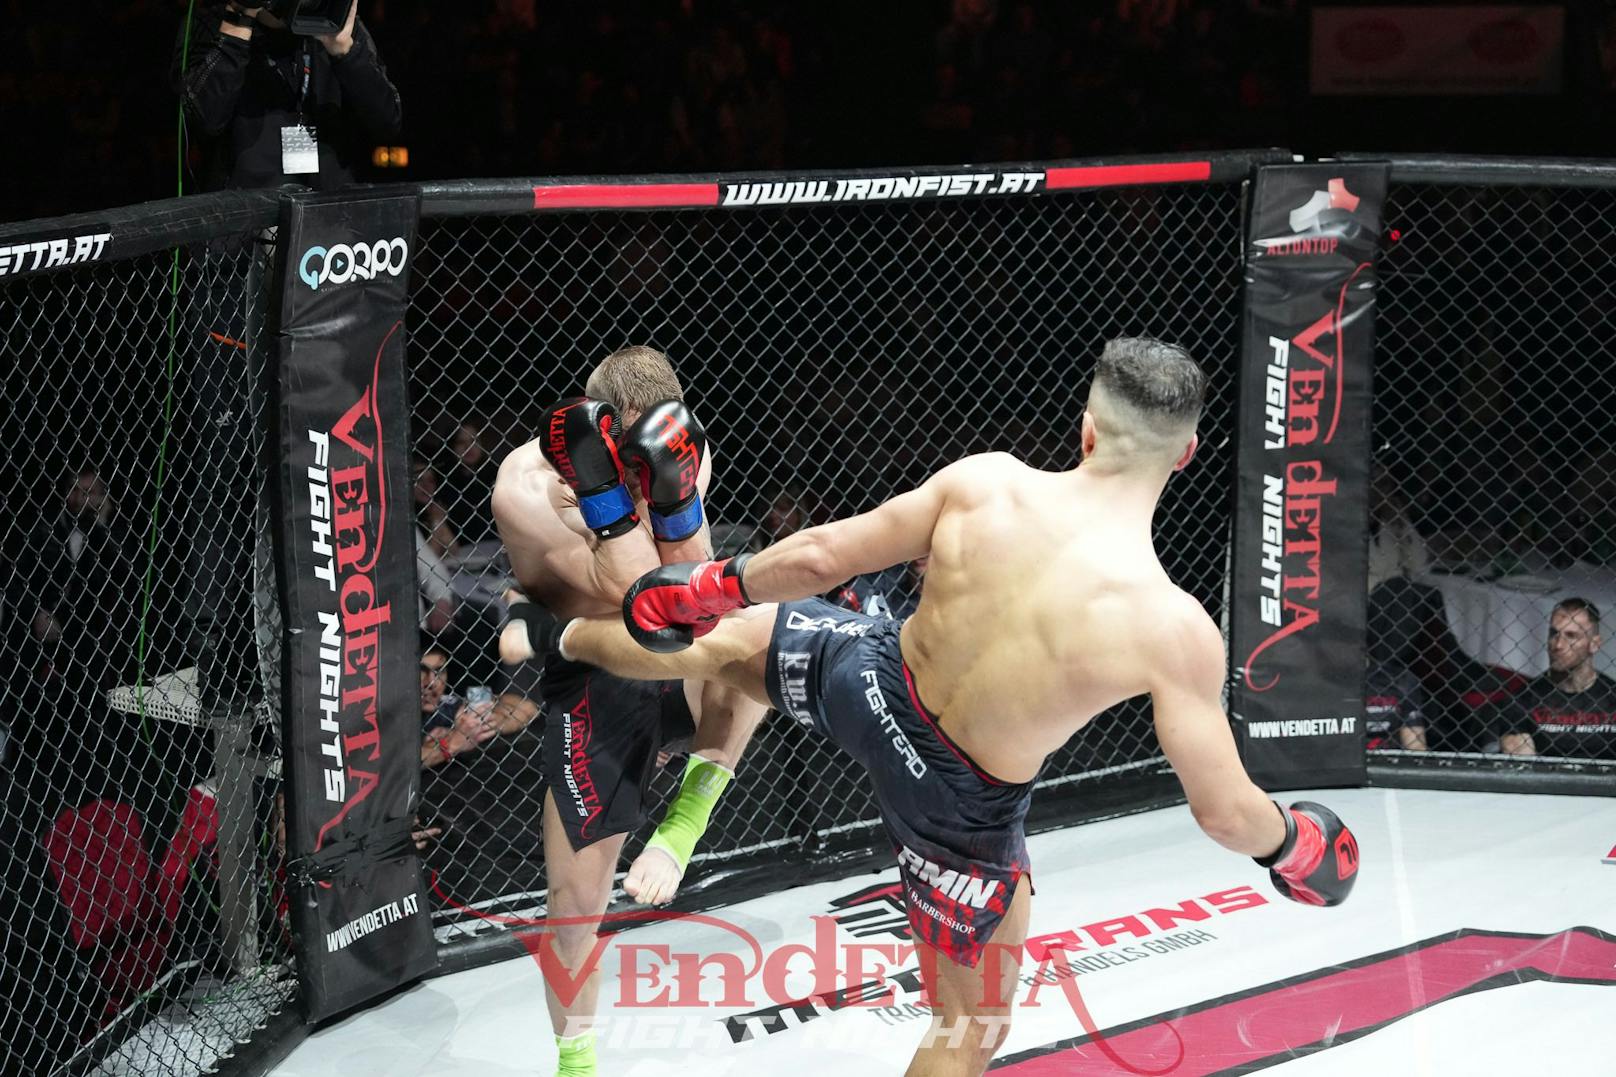 MMA-Fighter prügeln sich bei Mega-Event für guten Zweck